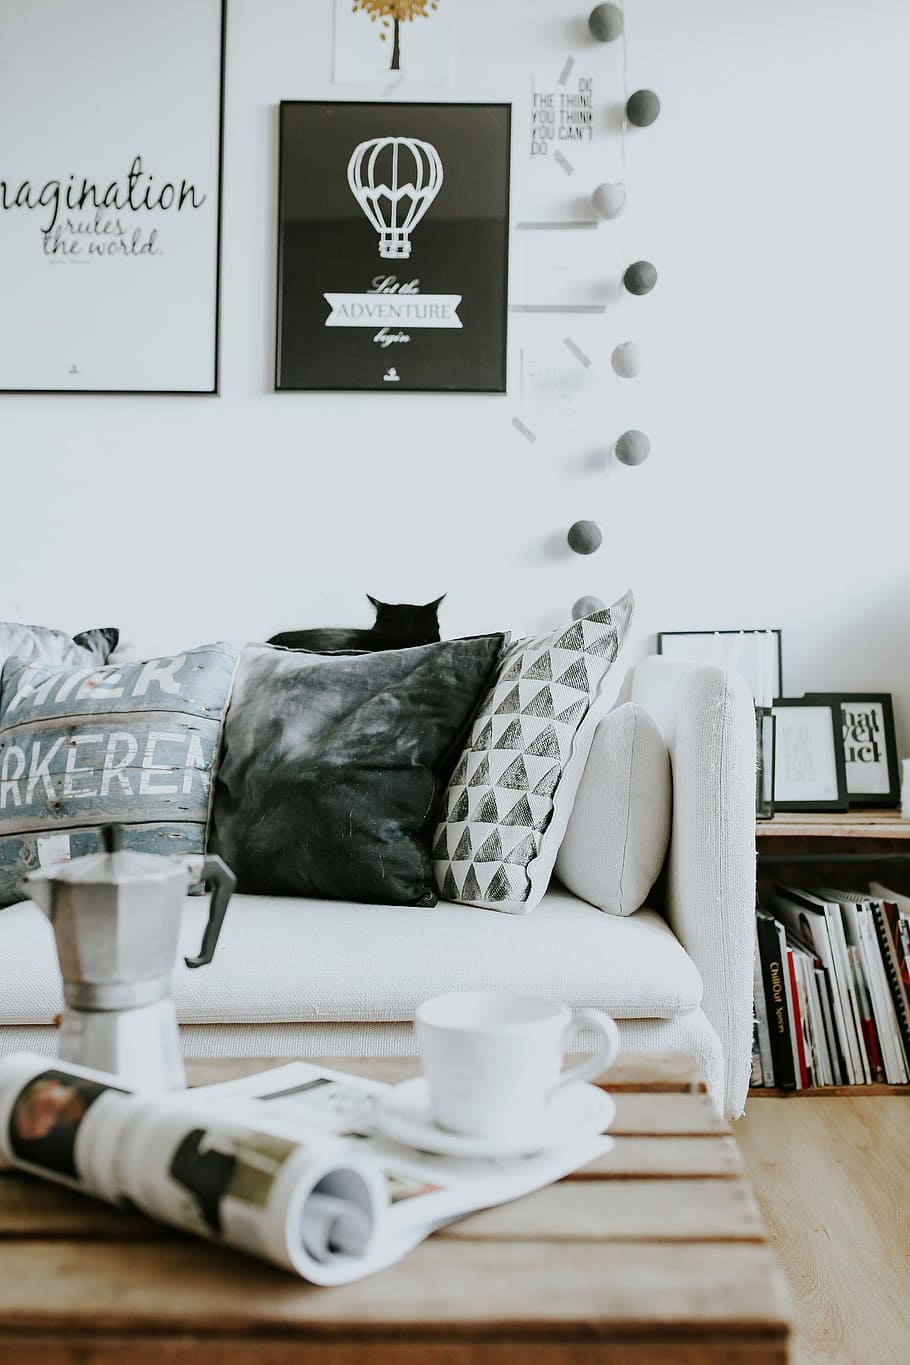 blanco y negro, decoración del hogar, contemporáneo, hogar blanco, interior, sofá, revistas, moderno, mesa, gato